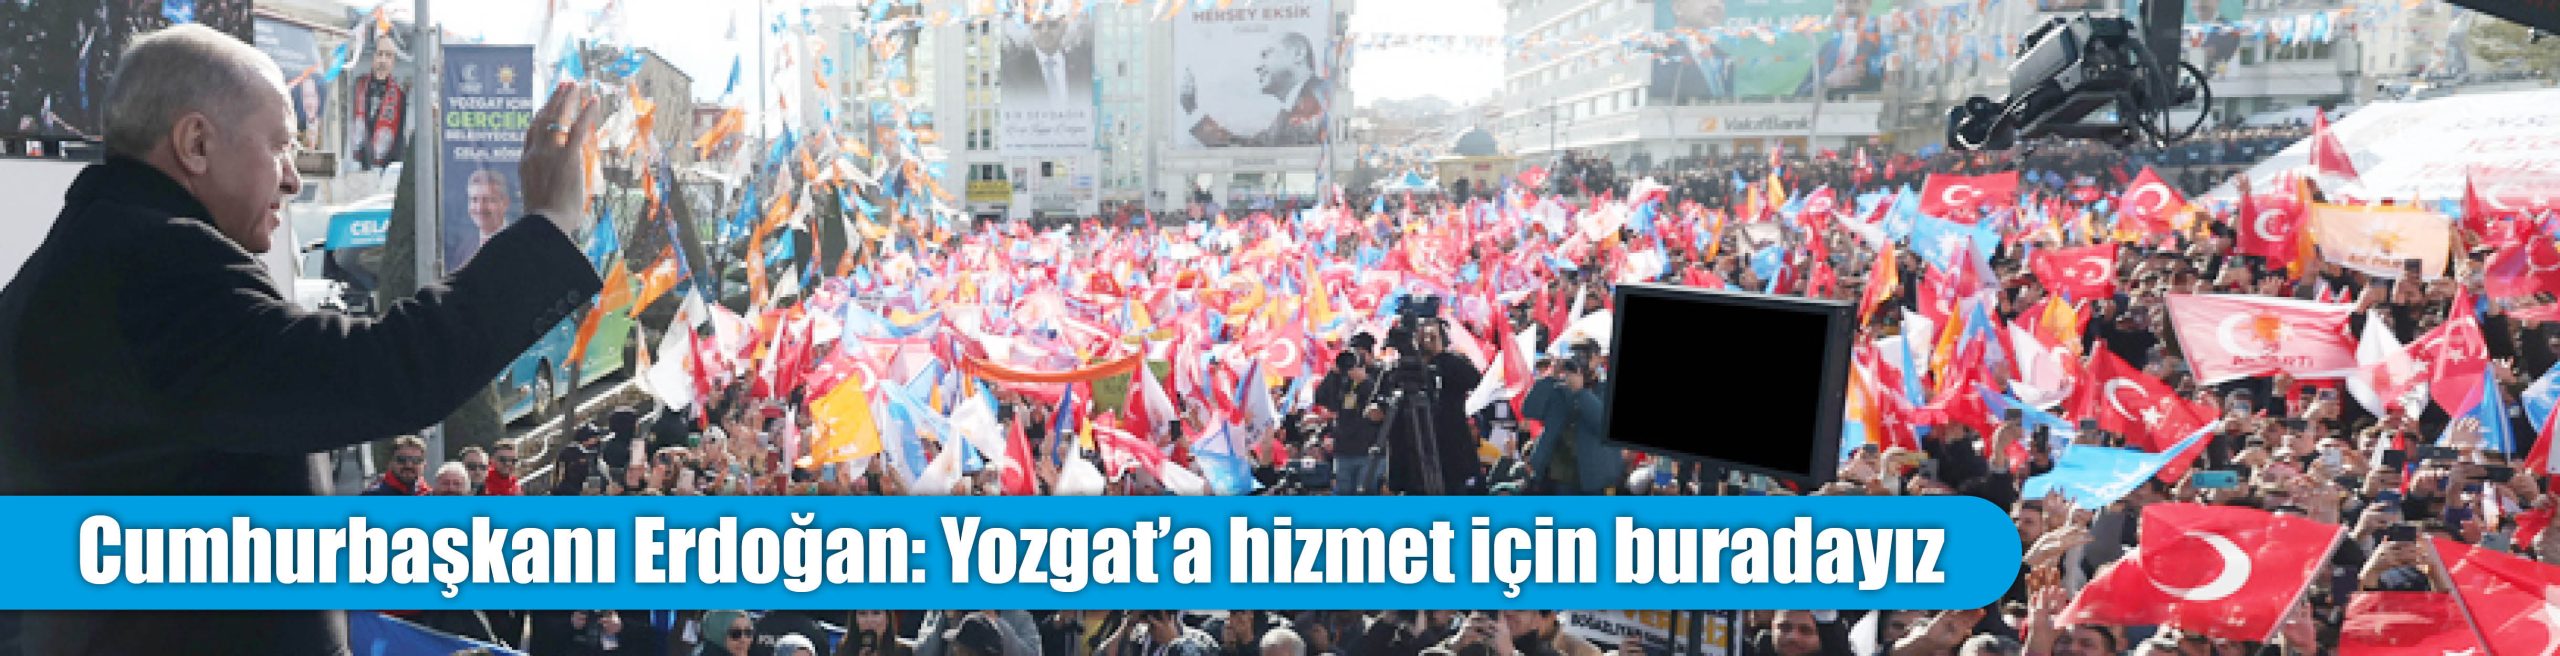 Cumhurbaşkanı Erdoğan: Yozgat’a hizmet için buradayız